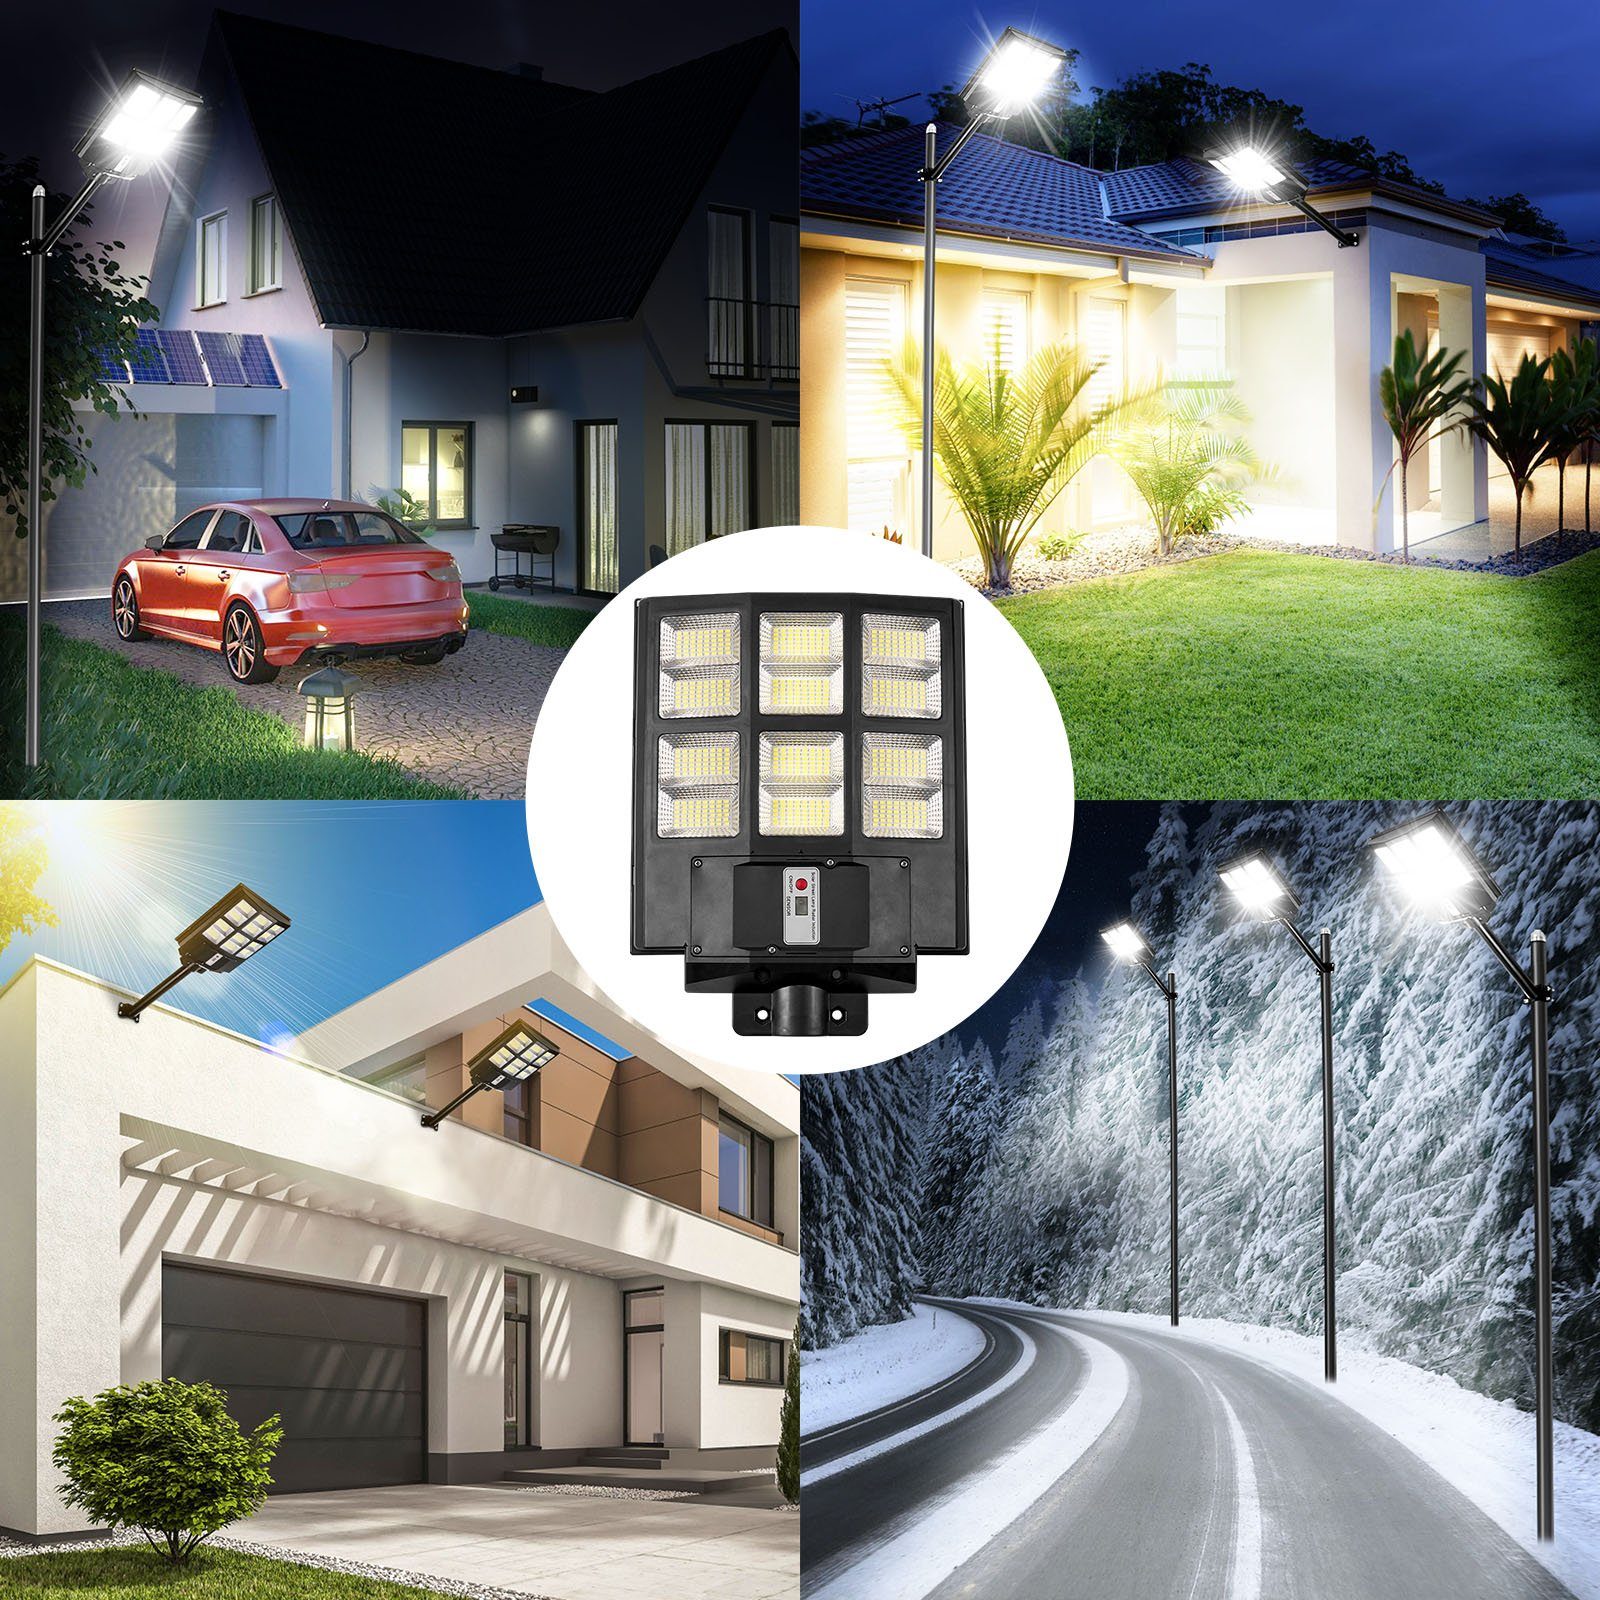 Sunicol LED Flutlichtstrahler Solarbetriebenes wasserdicht,mit IP65 mit Außenparkplätze, Tageslichtweiß, Sicherheitsflutlicht, Kleine 6500K, für Fernsteuerung,Timer, Bewegungssensor Größe